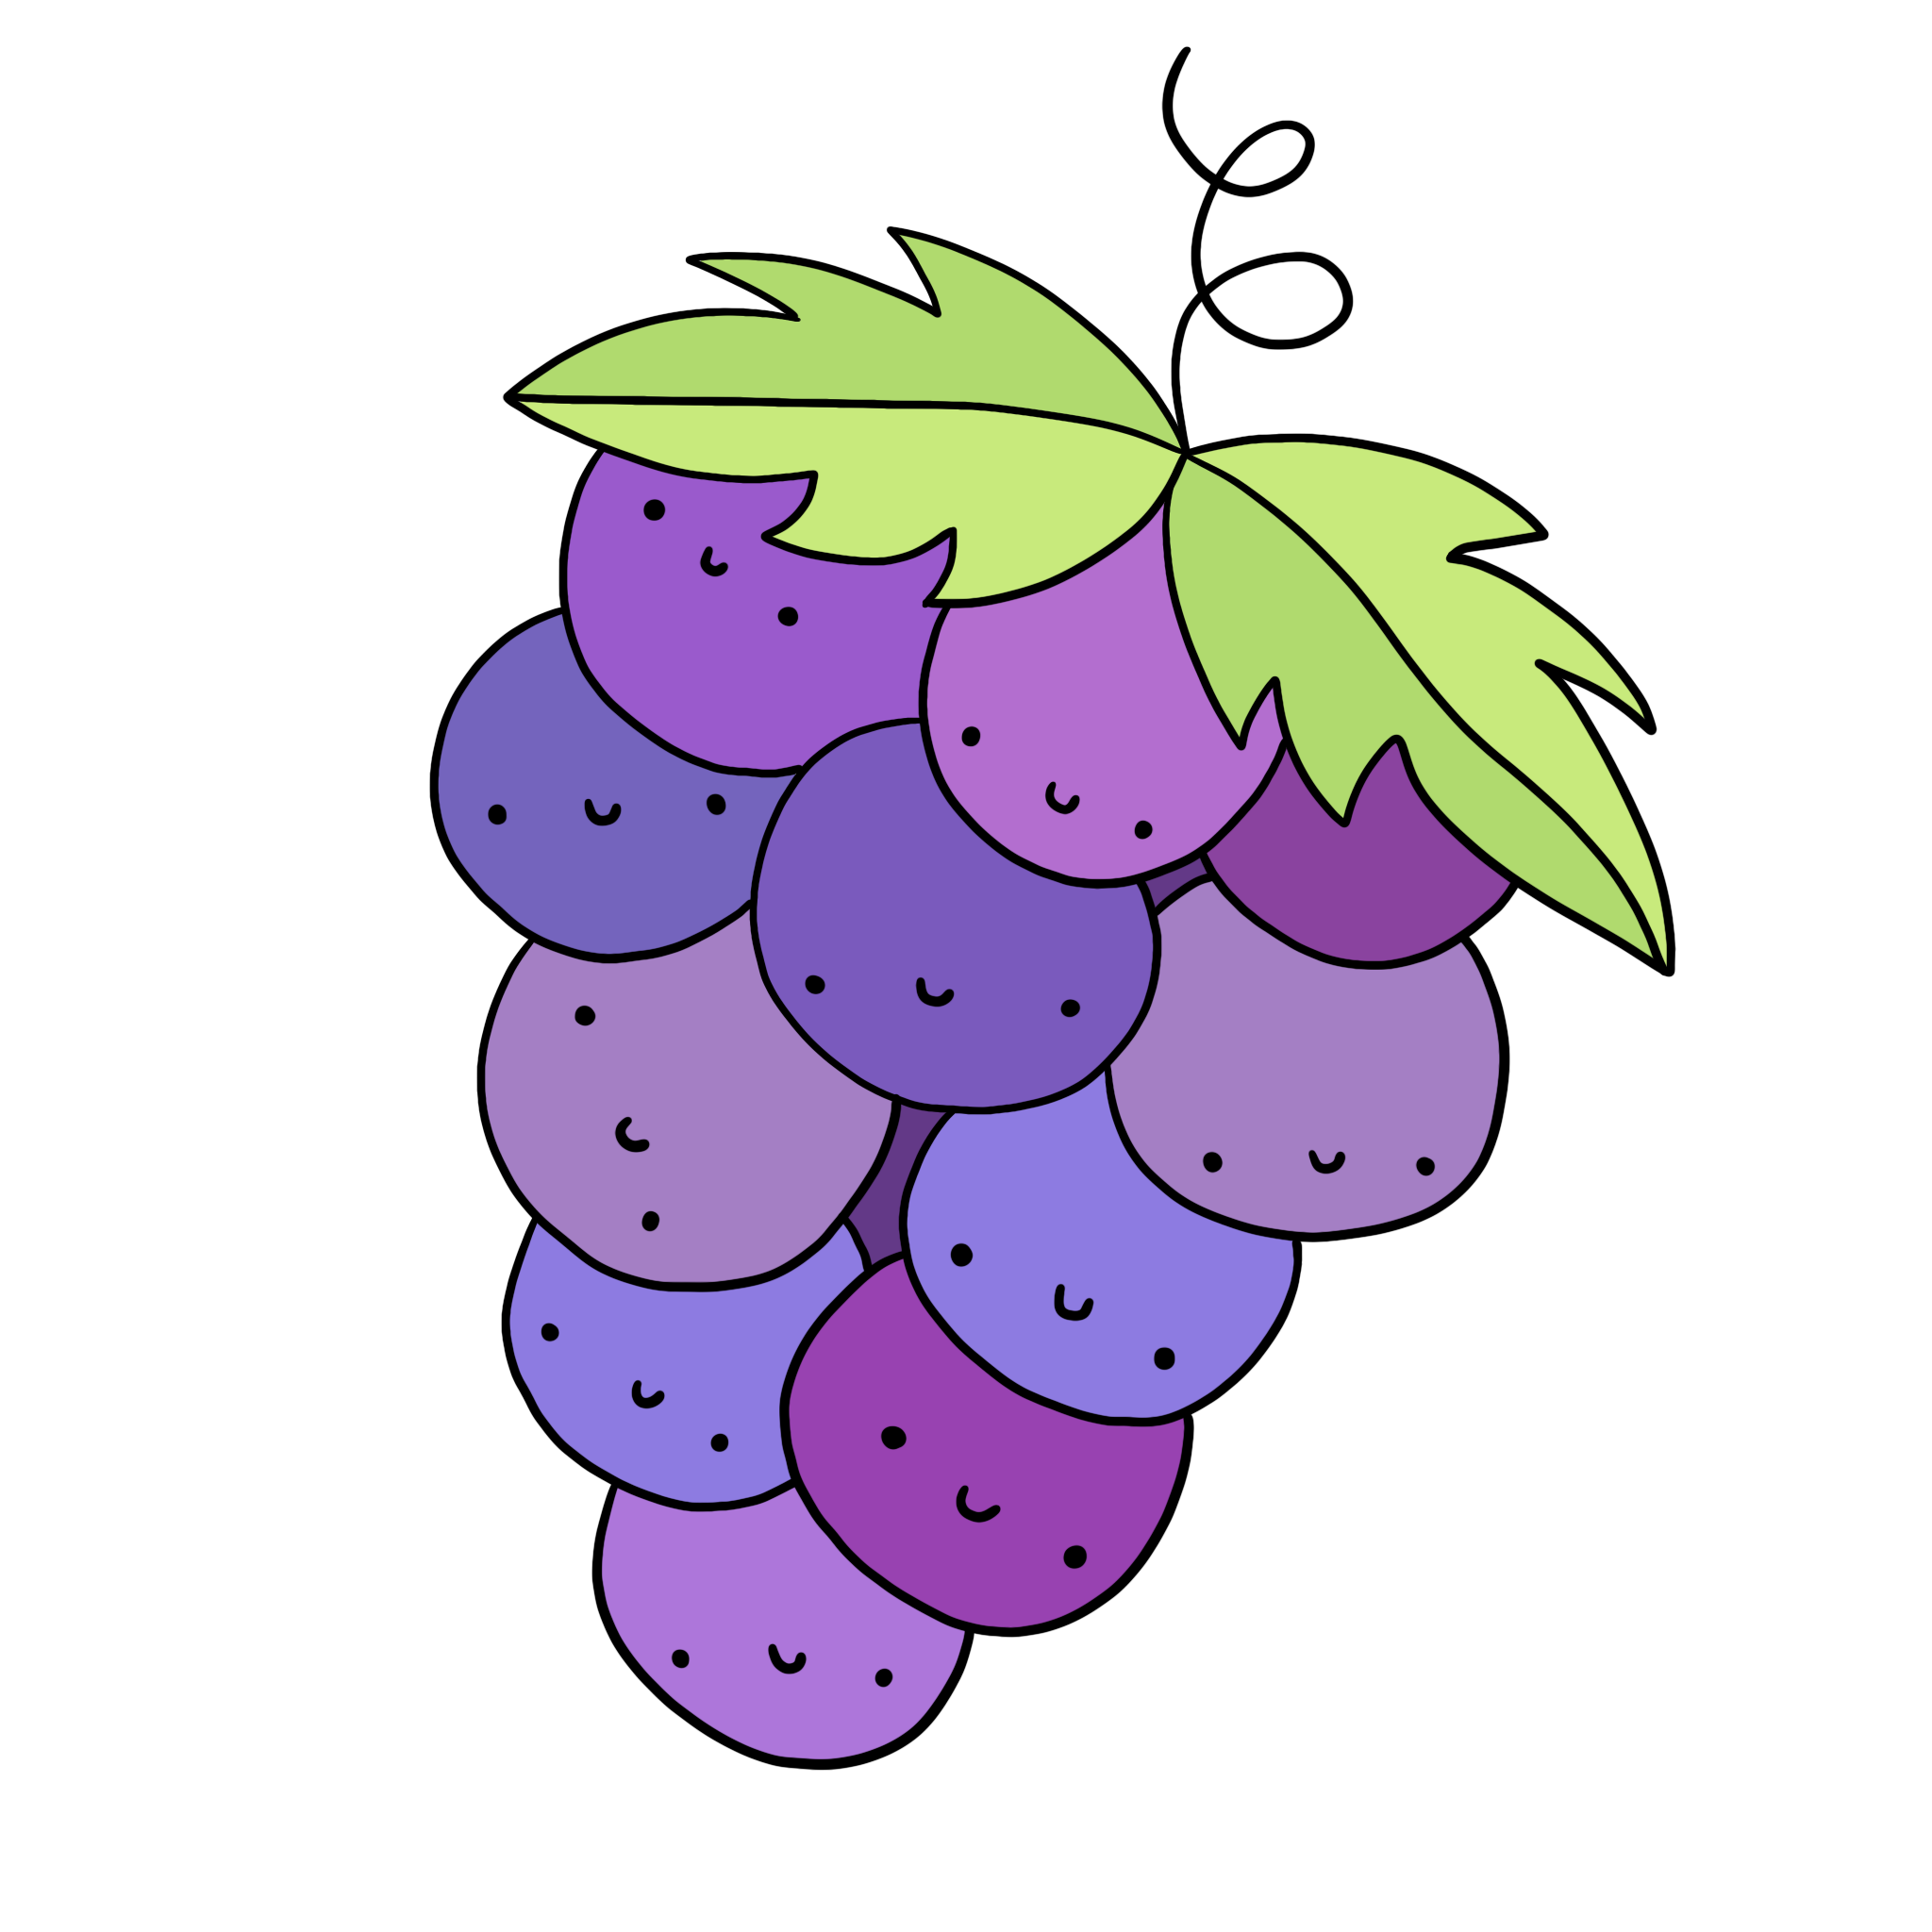 immagine disegno illustrazione uva